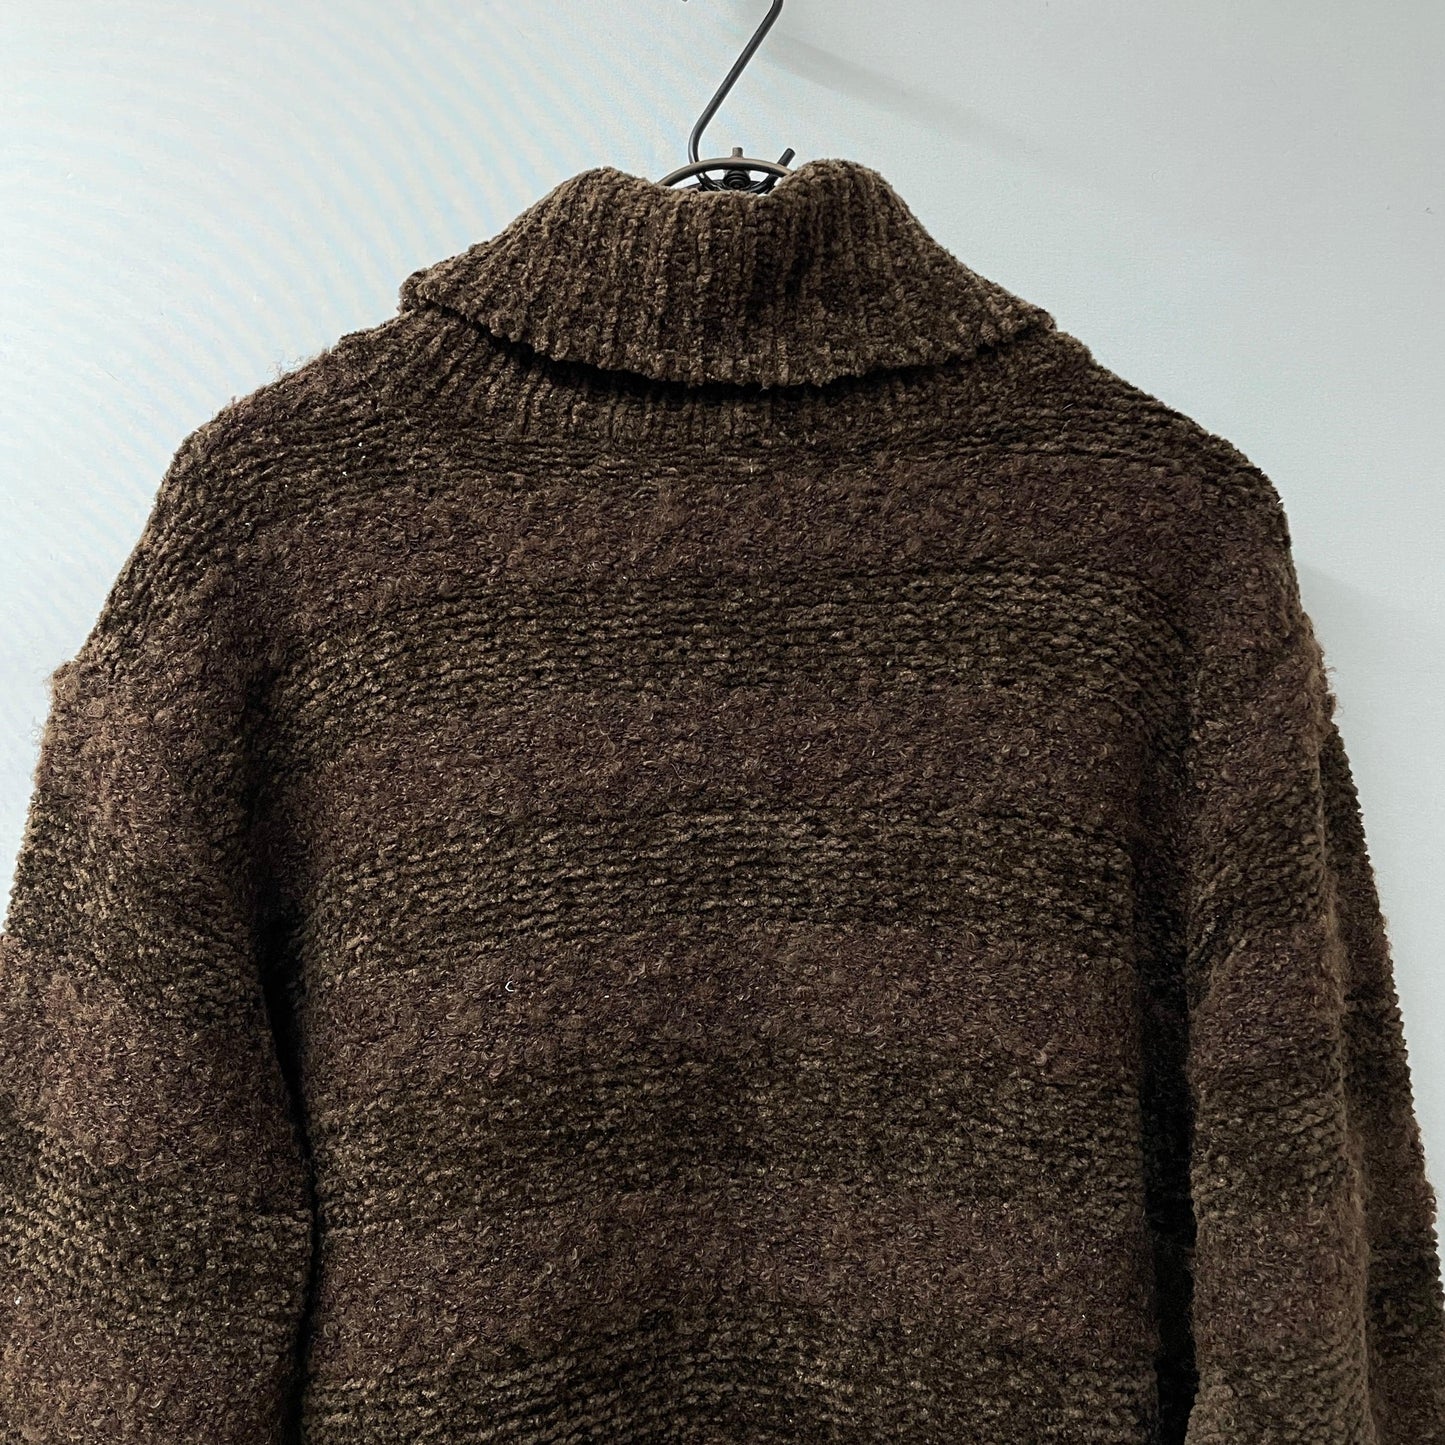 Pierre Cardin knit ハイネックニット